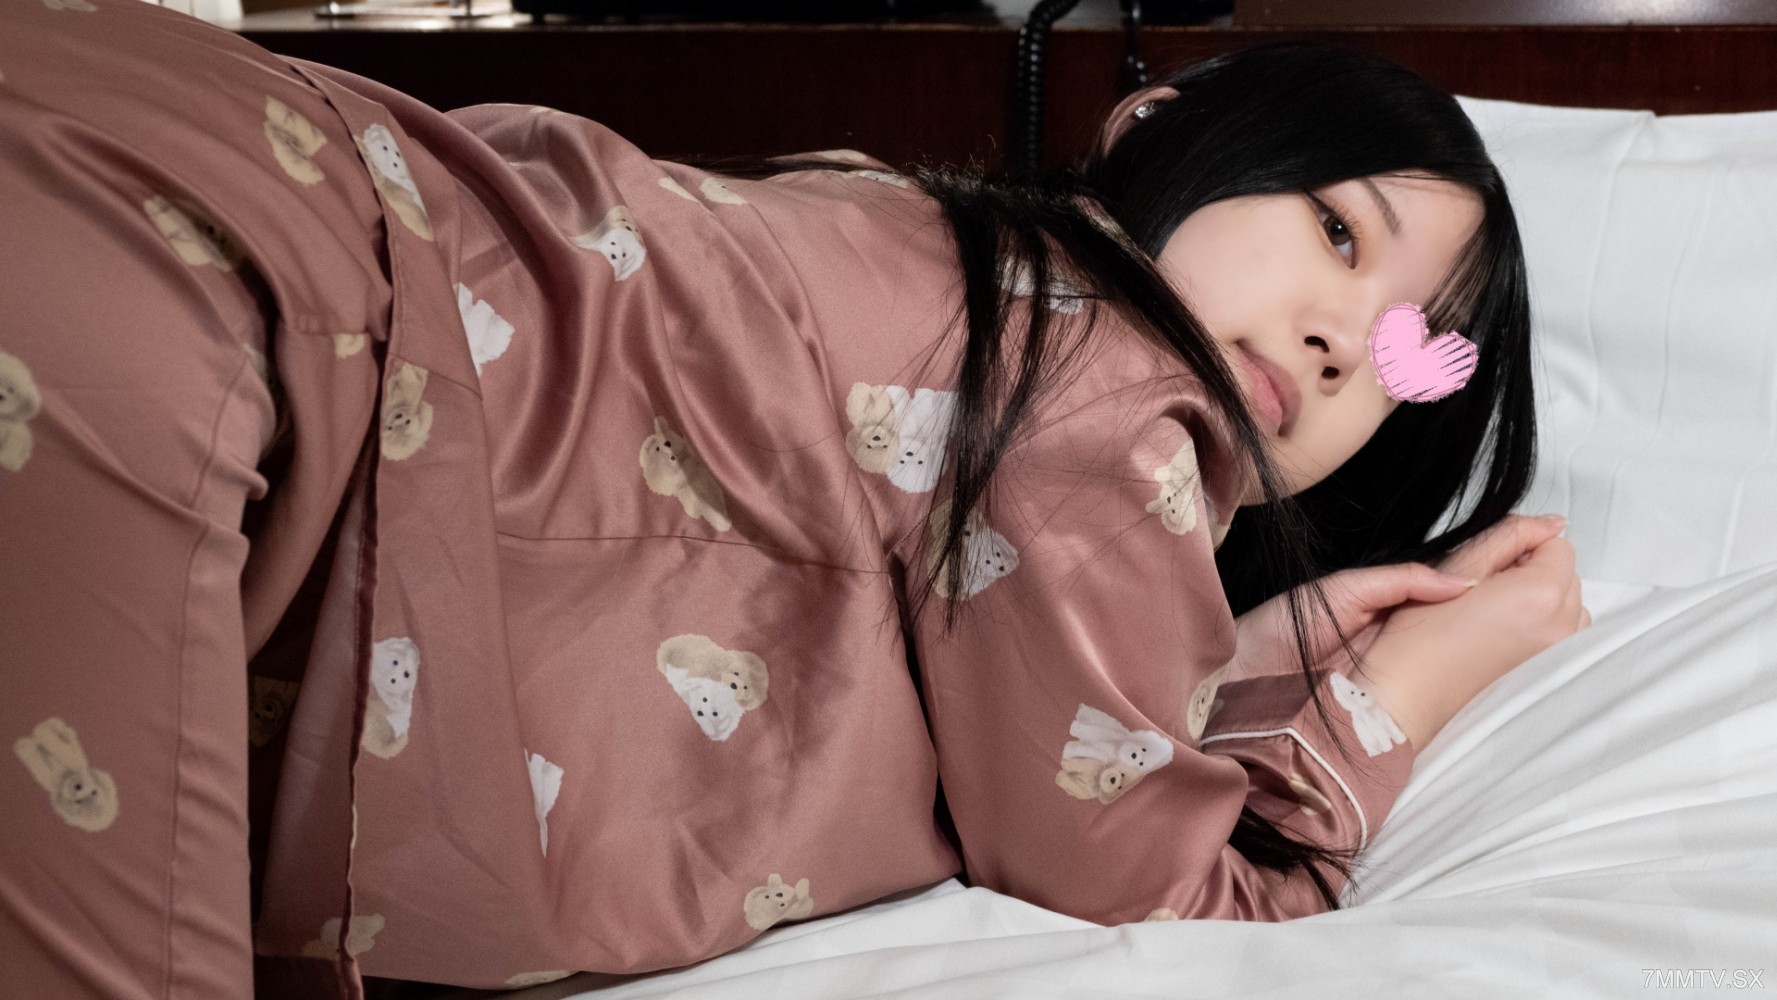 FC2-PPV-4462217 Pyjamas de ojama ♥ Tóc đen dài JD Miho-chan (21) ♥ Quản lý sạch sẽ và gợi cảm nhưng những ngón tay dài lại gợi tình.